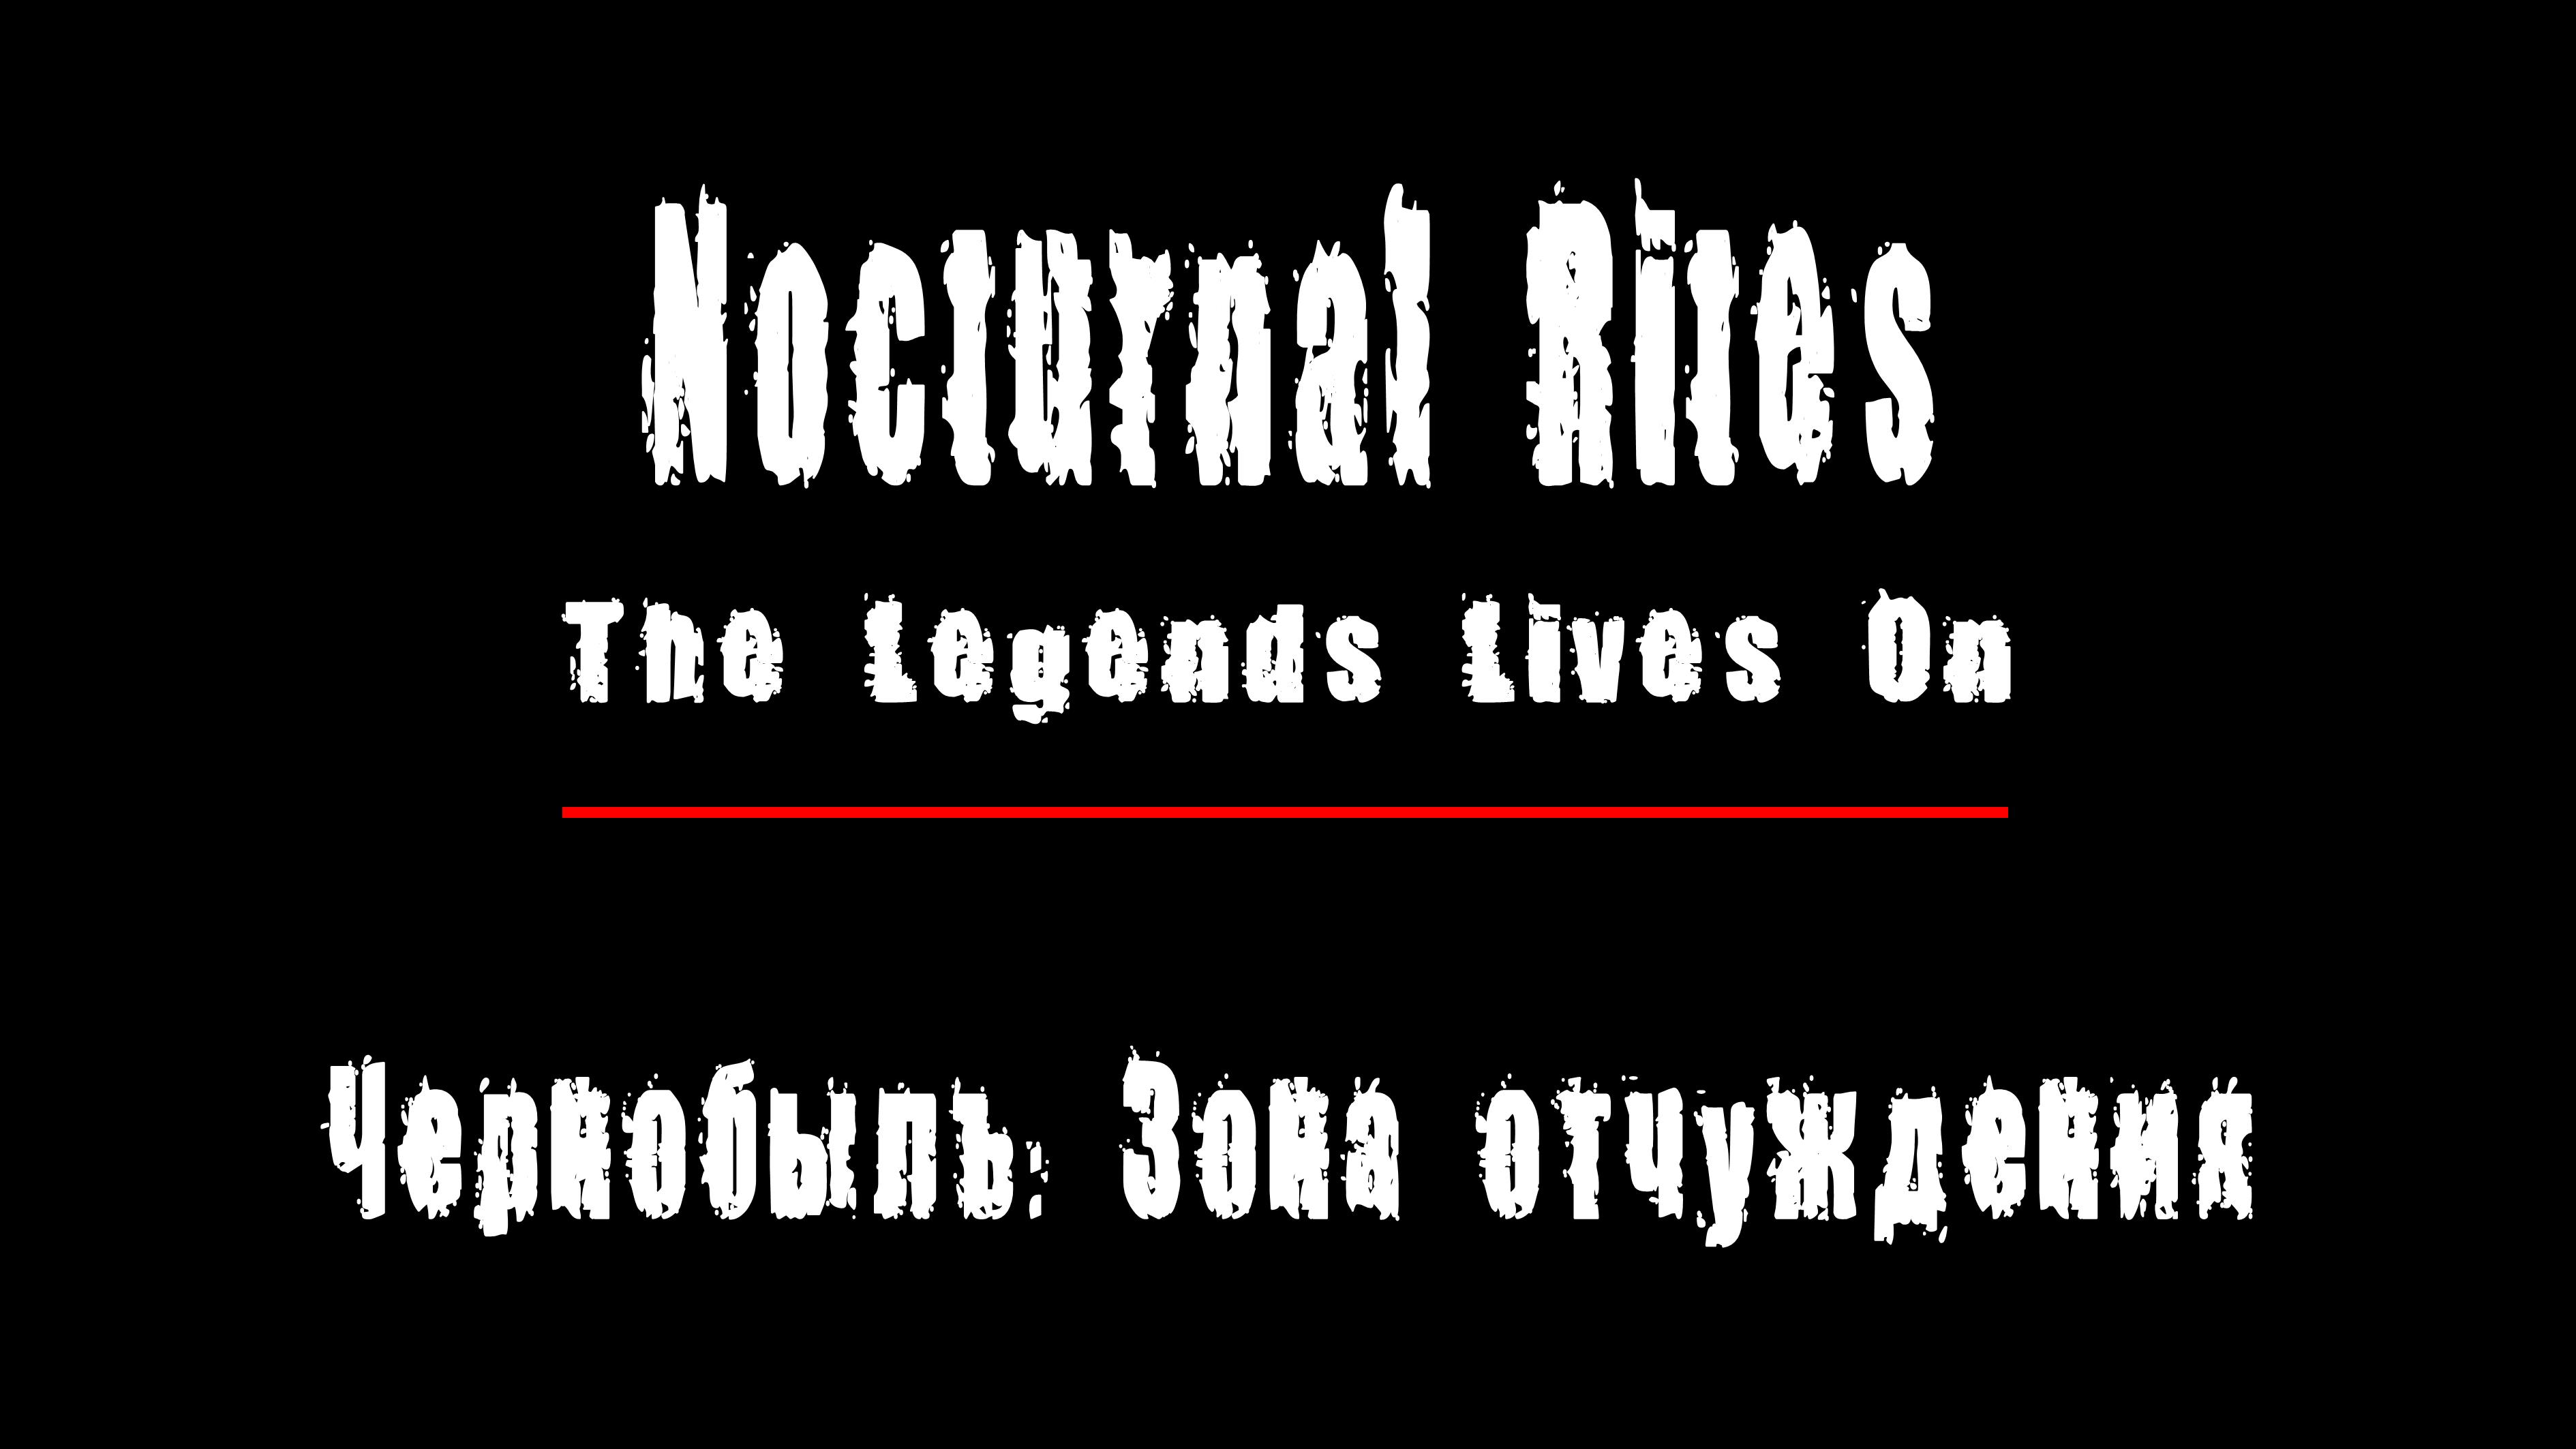 "THE LEGENDS LIVES ON" - группа "Nocturnal Rites". Чернобыль: Зона Отчуждения, Припять.